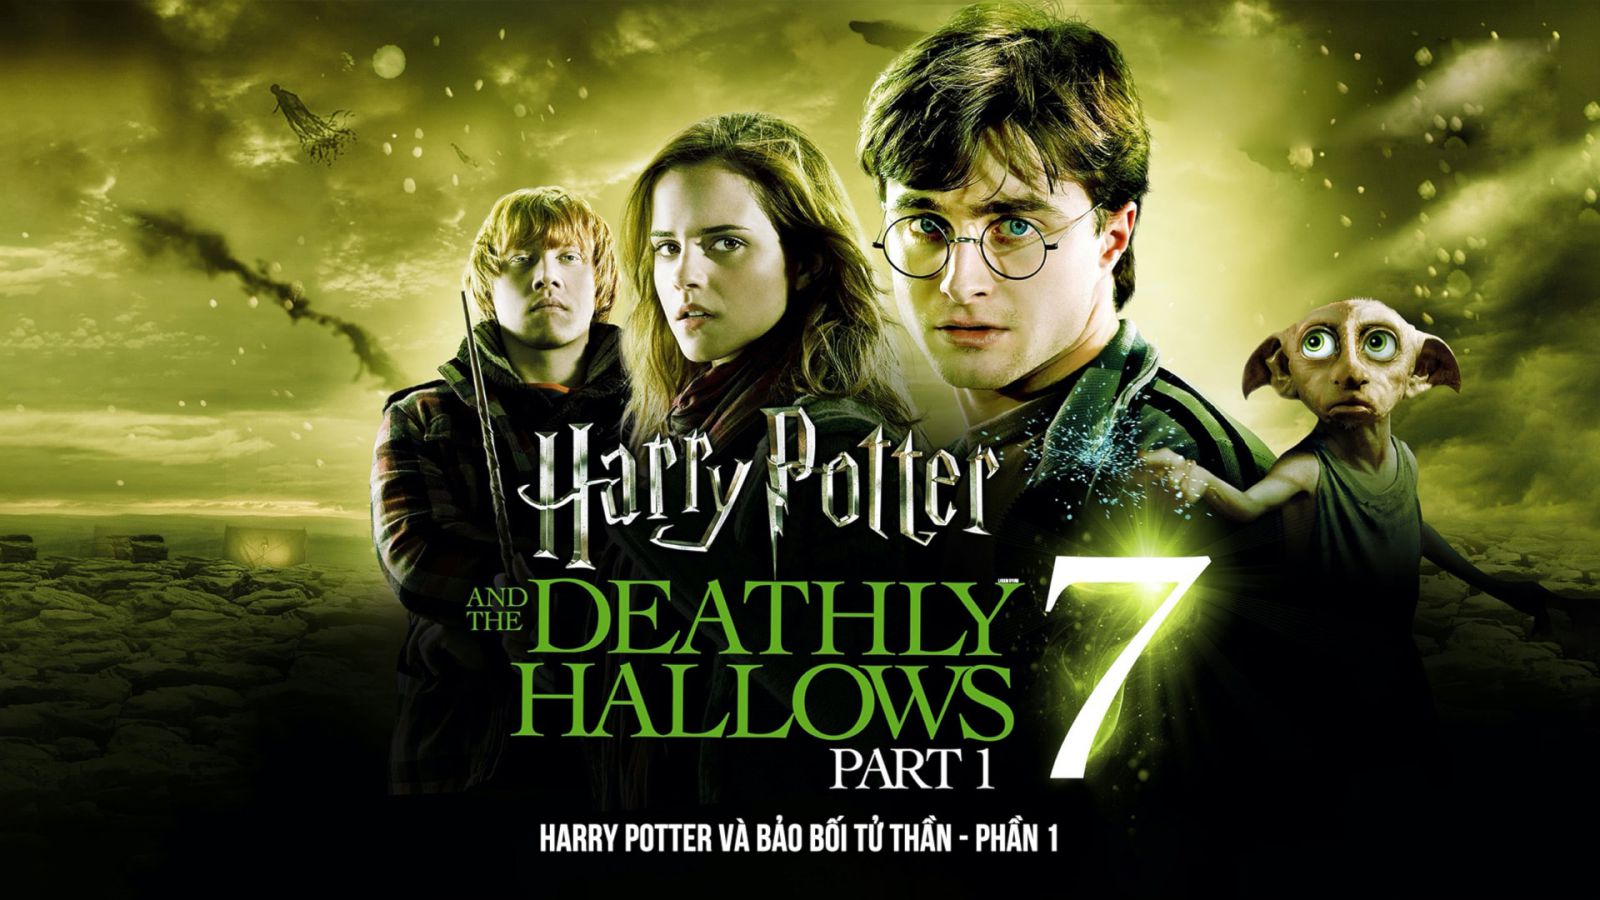 Xem Phim Harry Potter và Bảo Bối Tử Thần (Phần 1) Full HD Thuyết Minh